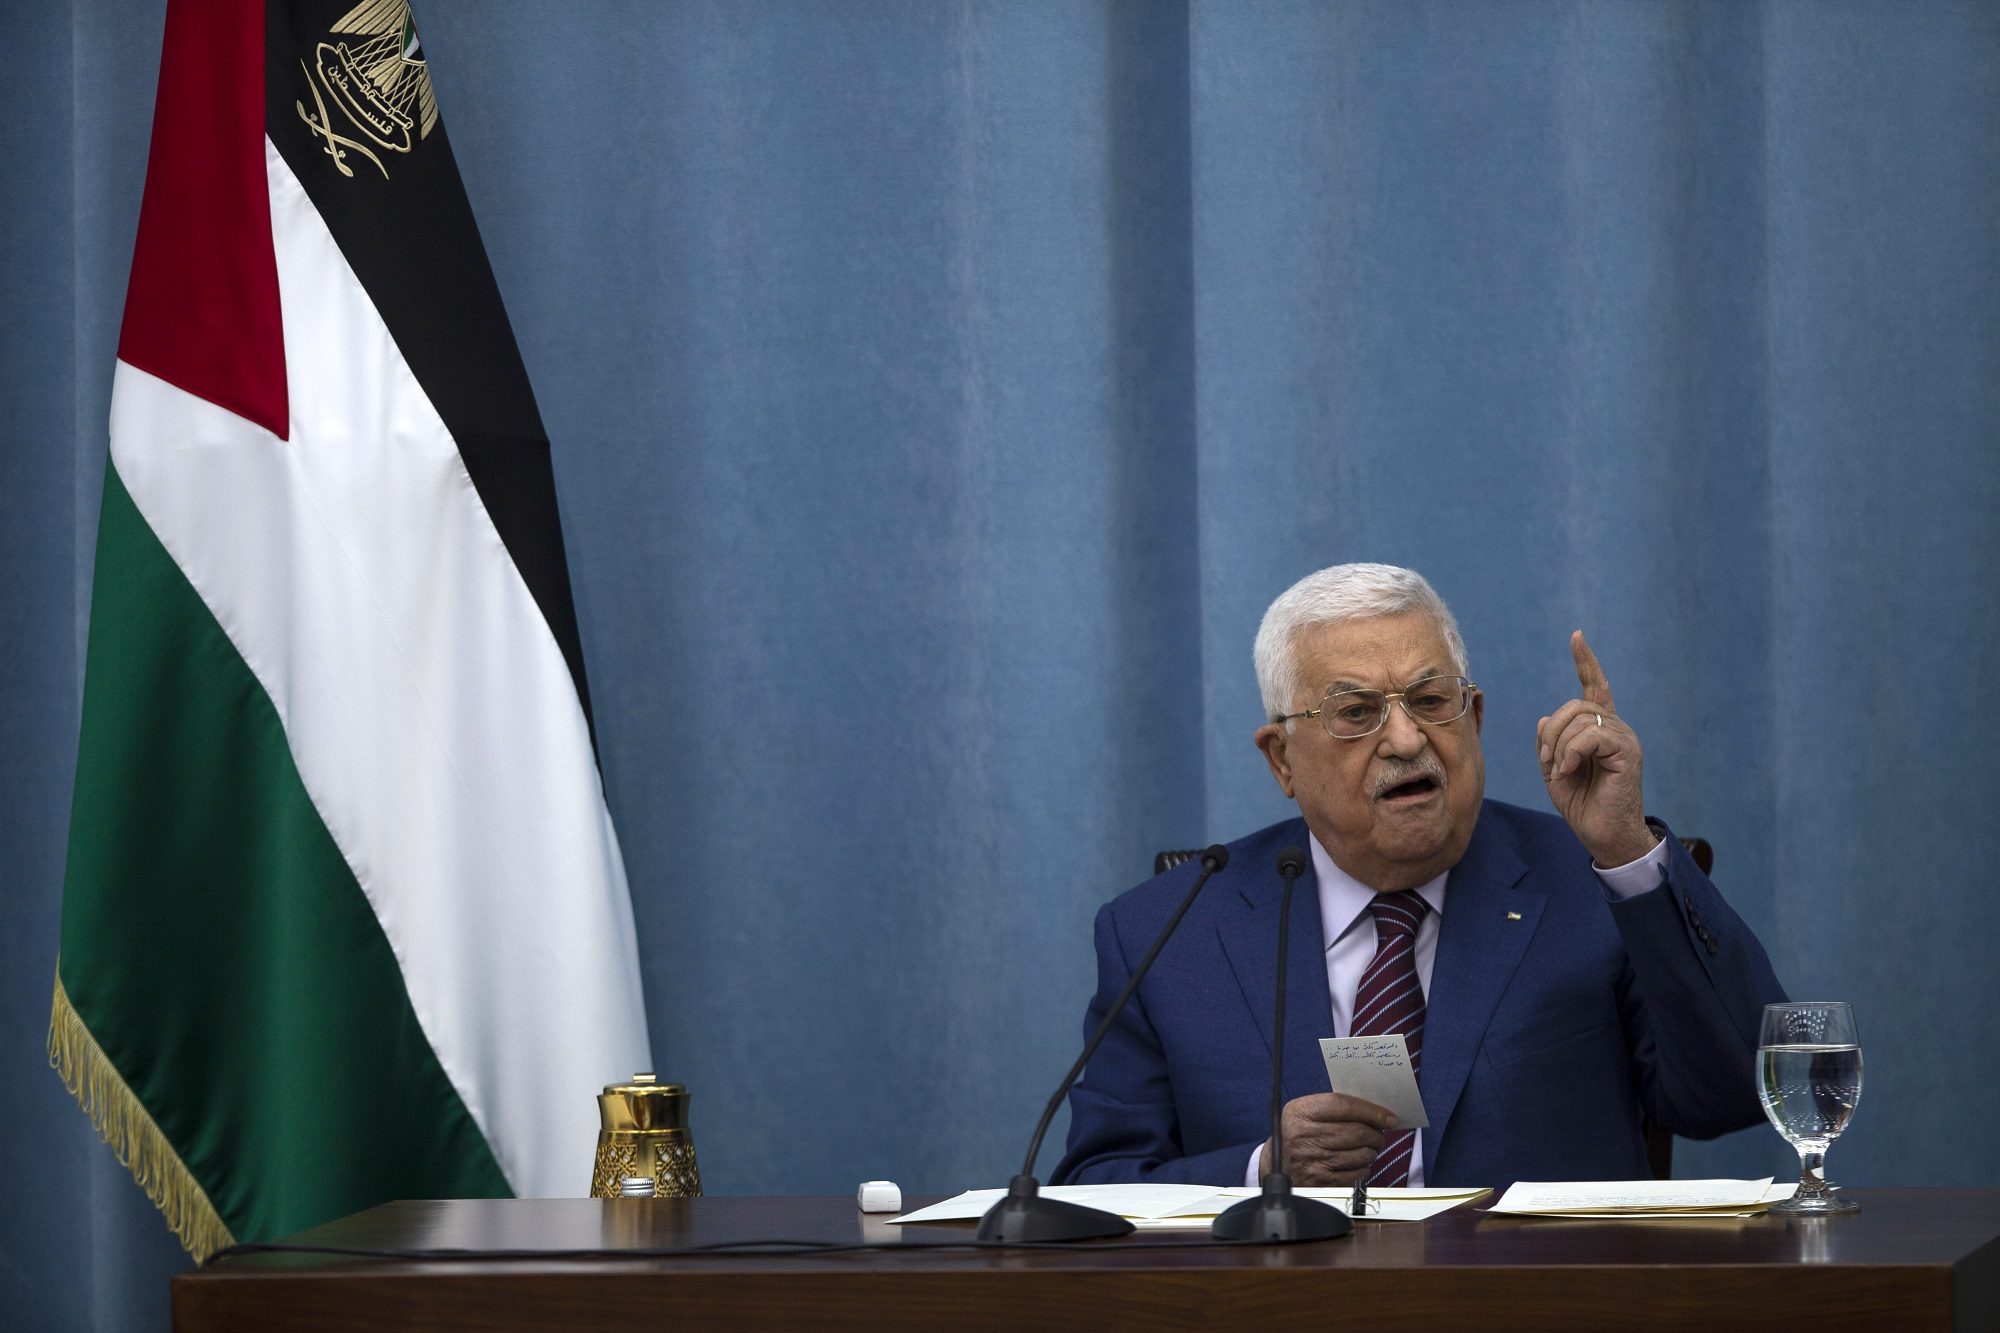 Παλαιστίνη – Ραμάλα: Συνάντηση Προέδρου Αμπάς με υπ. Άμυνας Ισραήλ ενόψει επίσκεψης Μπάιντεν στην περιοχή